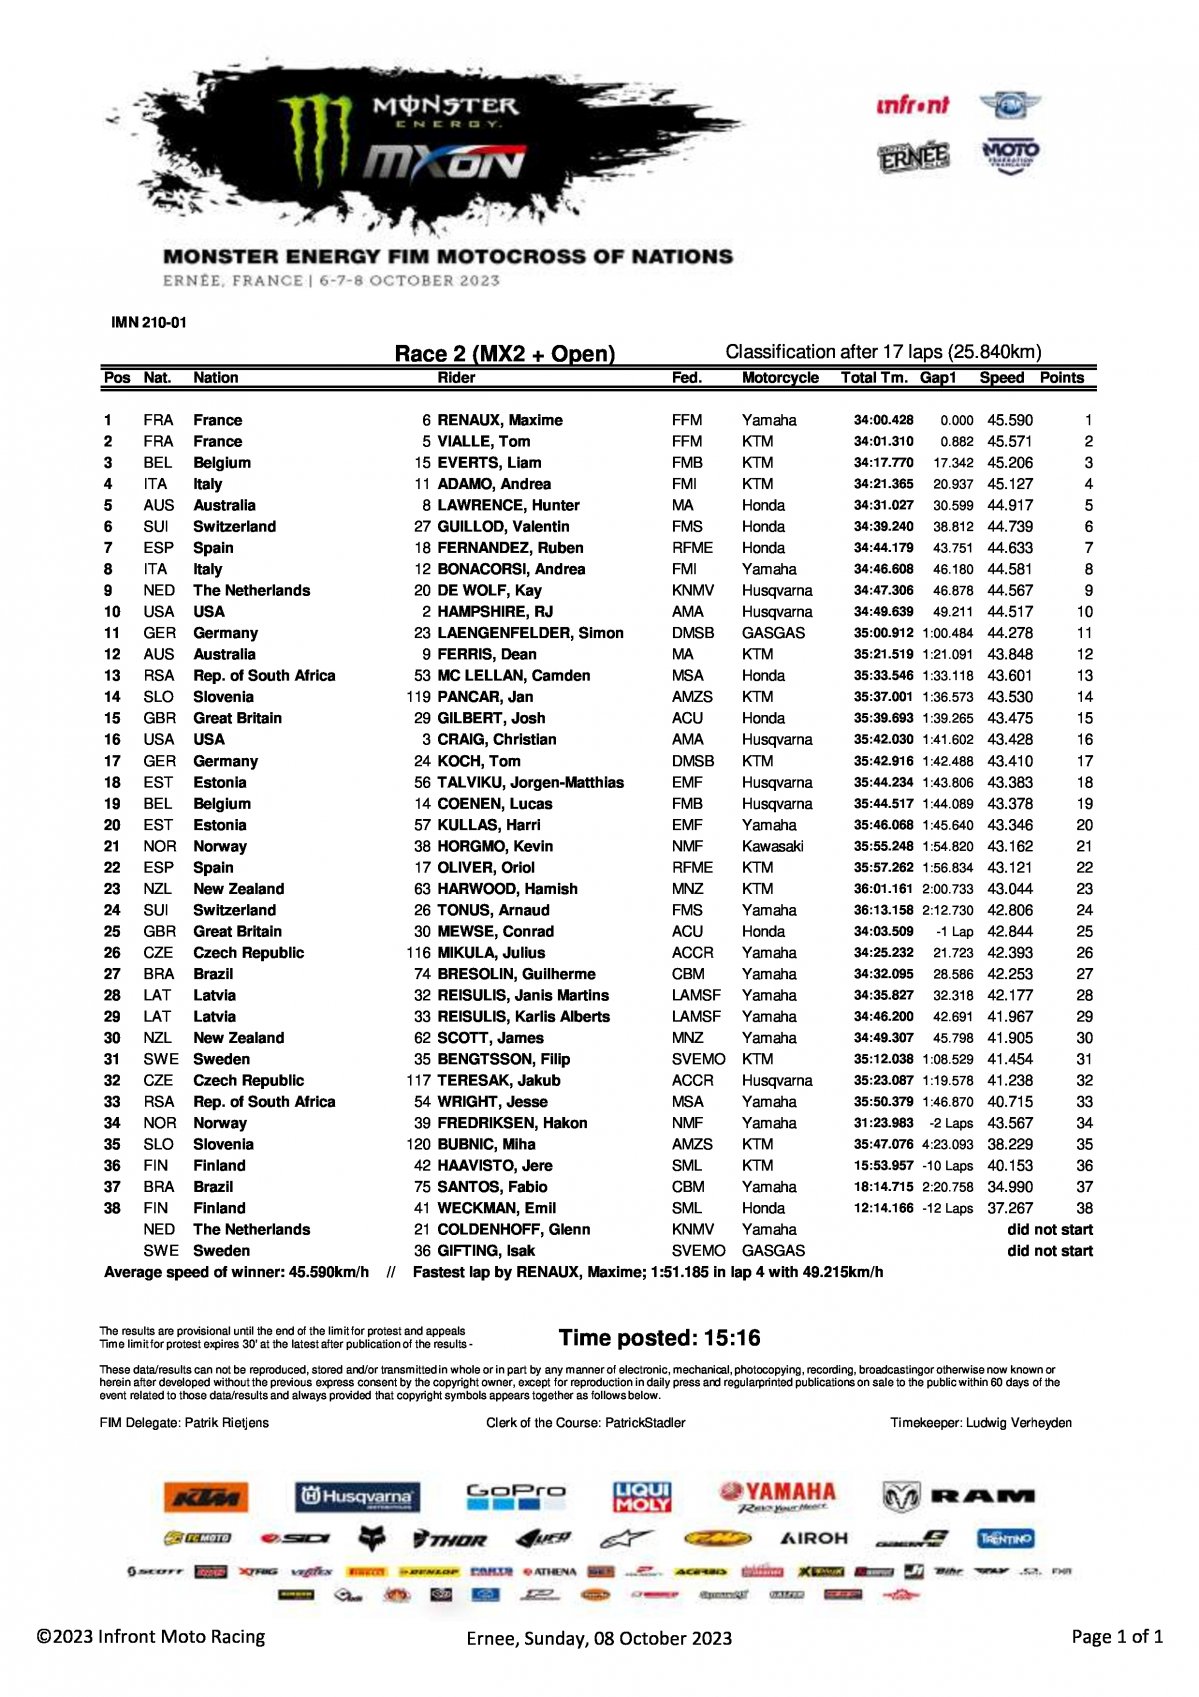 Результаты 2 гонки Мотокросса Наций 2023 - MX2/Open (8/10/2023)